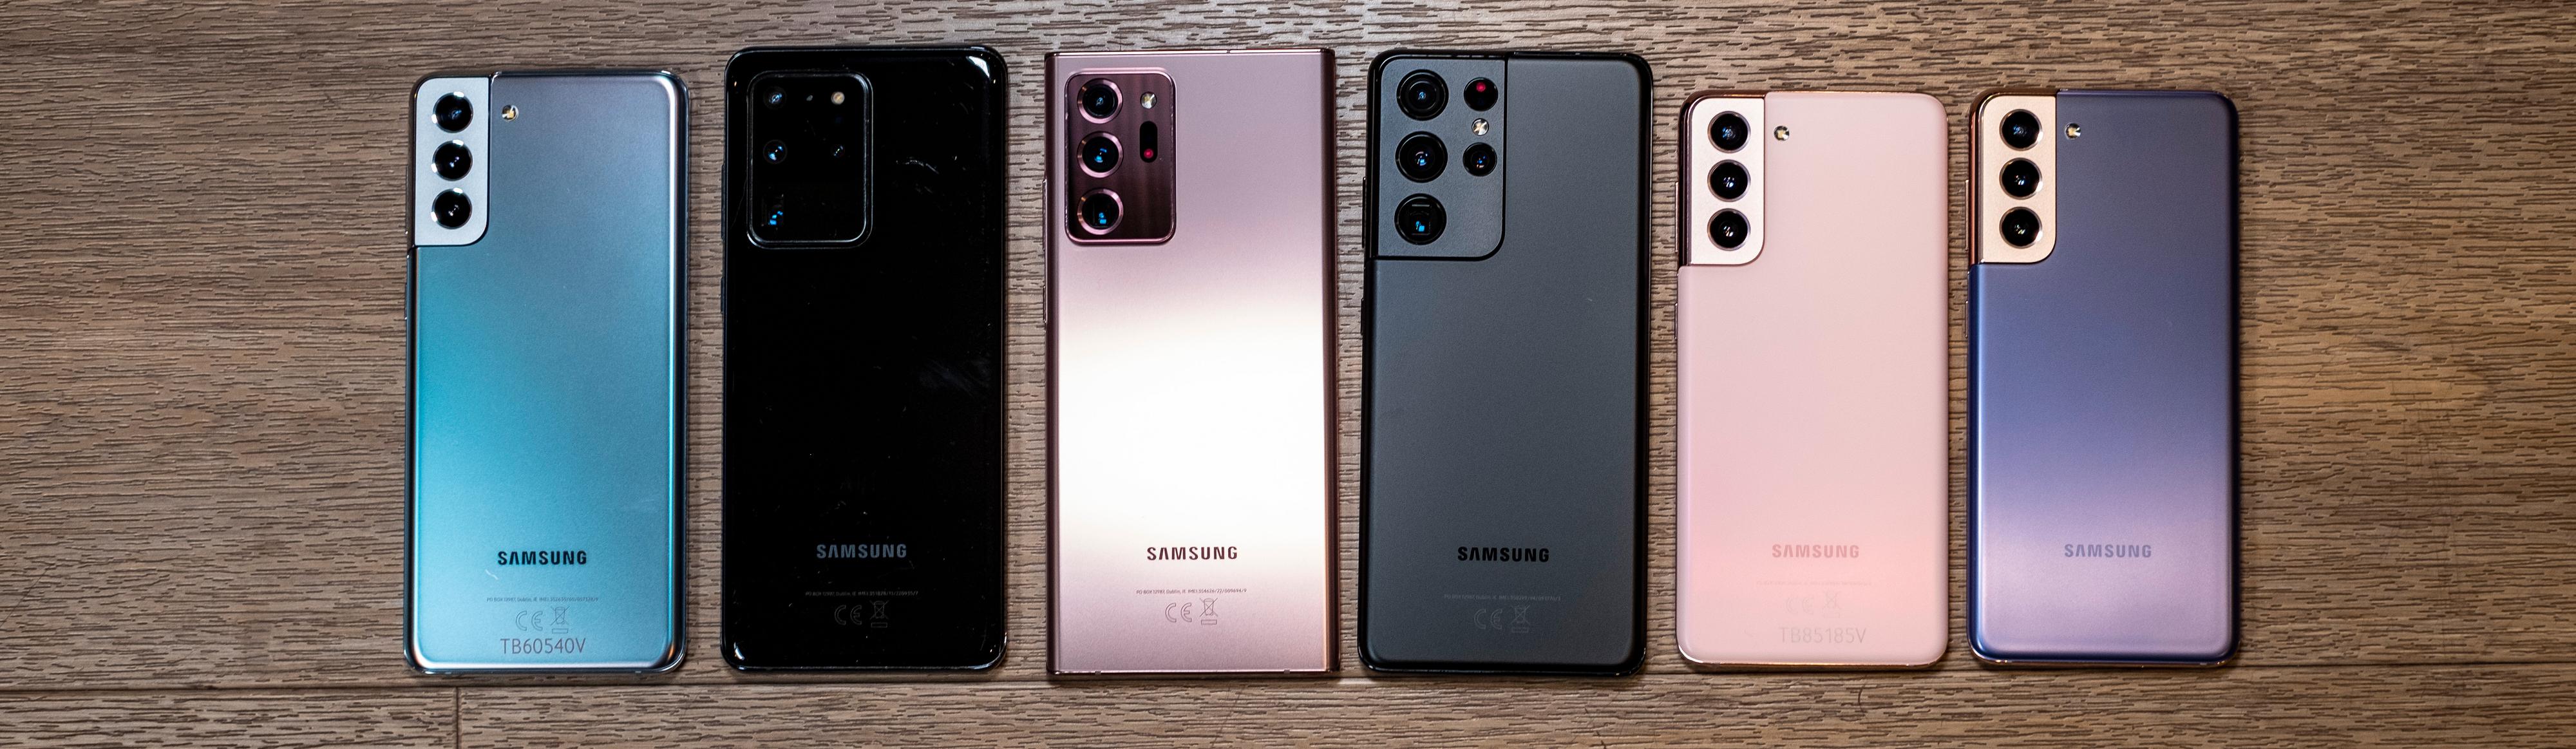 Alle de nyeste Galaxyene på rad og rekke. Fra venstre: Galaxy S21+, Galaxy S20 Ultra, Galaxy Note 20 Ultra, Galaxy S21 Ultra og to varianter Galaxy S21 helt til høyre.